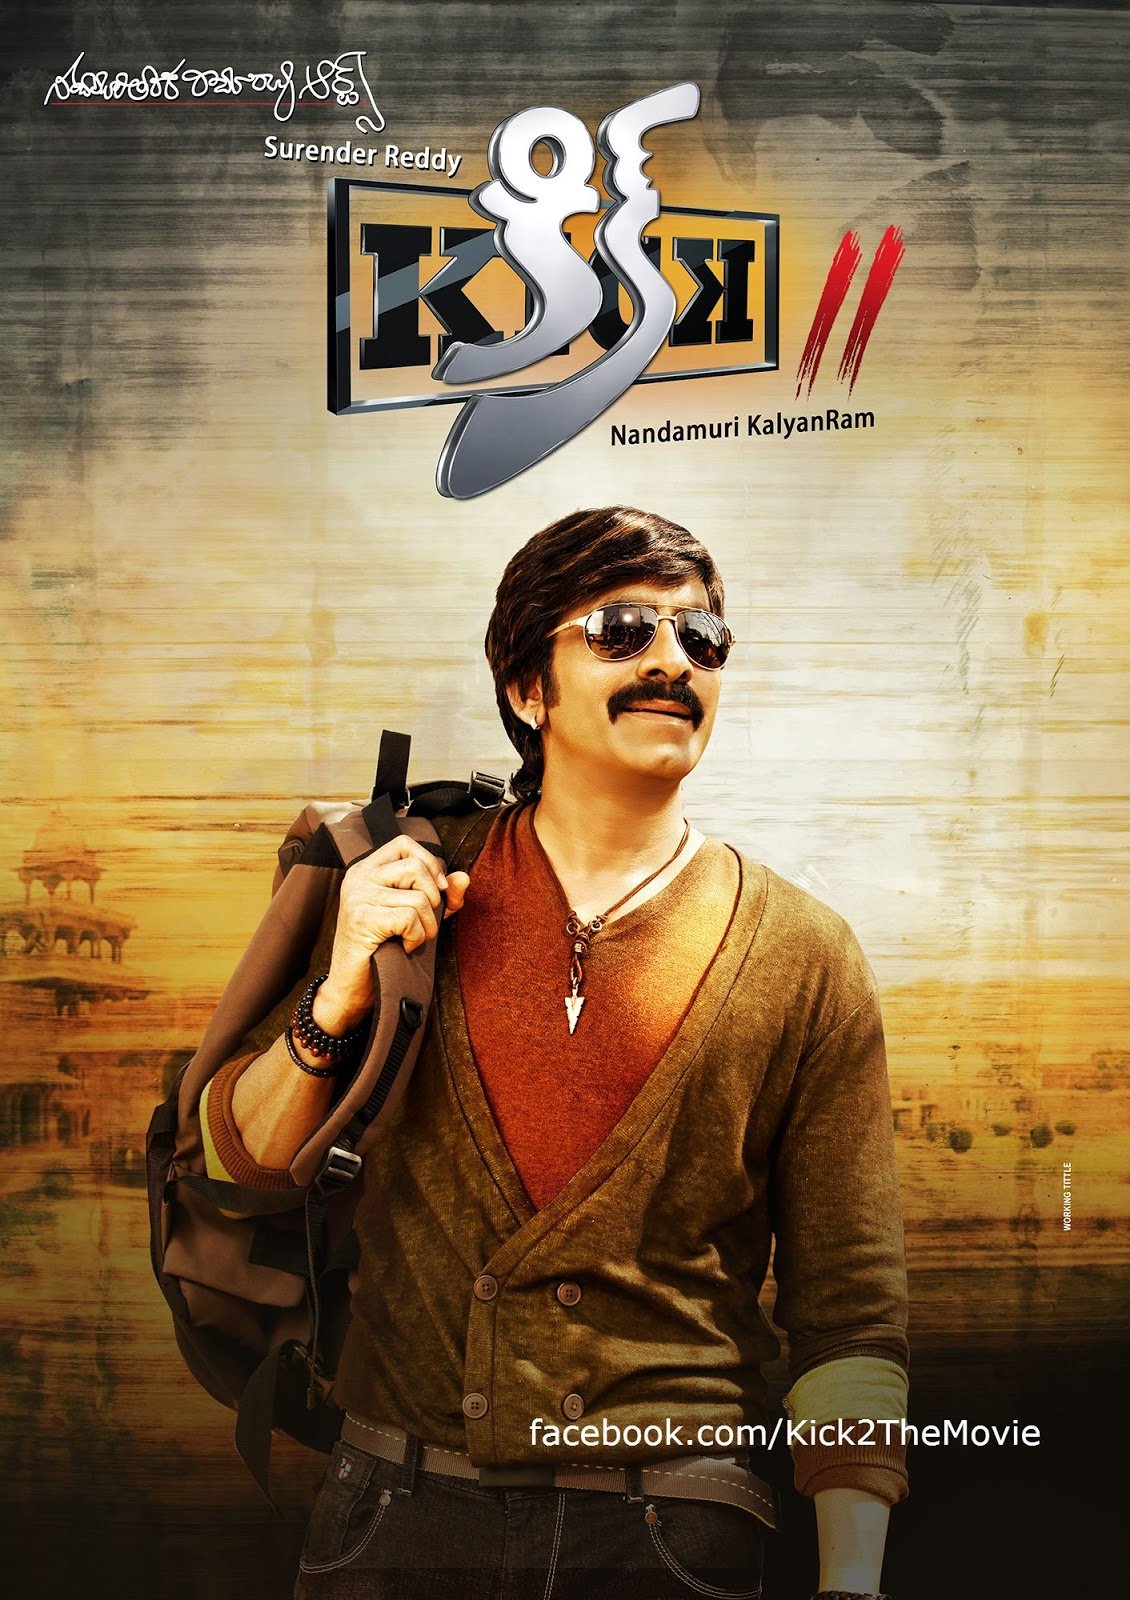 Telugu poster of the movie Kick 2